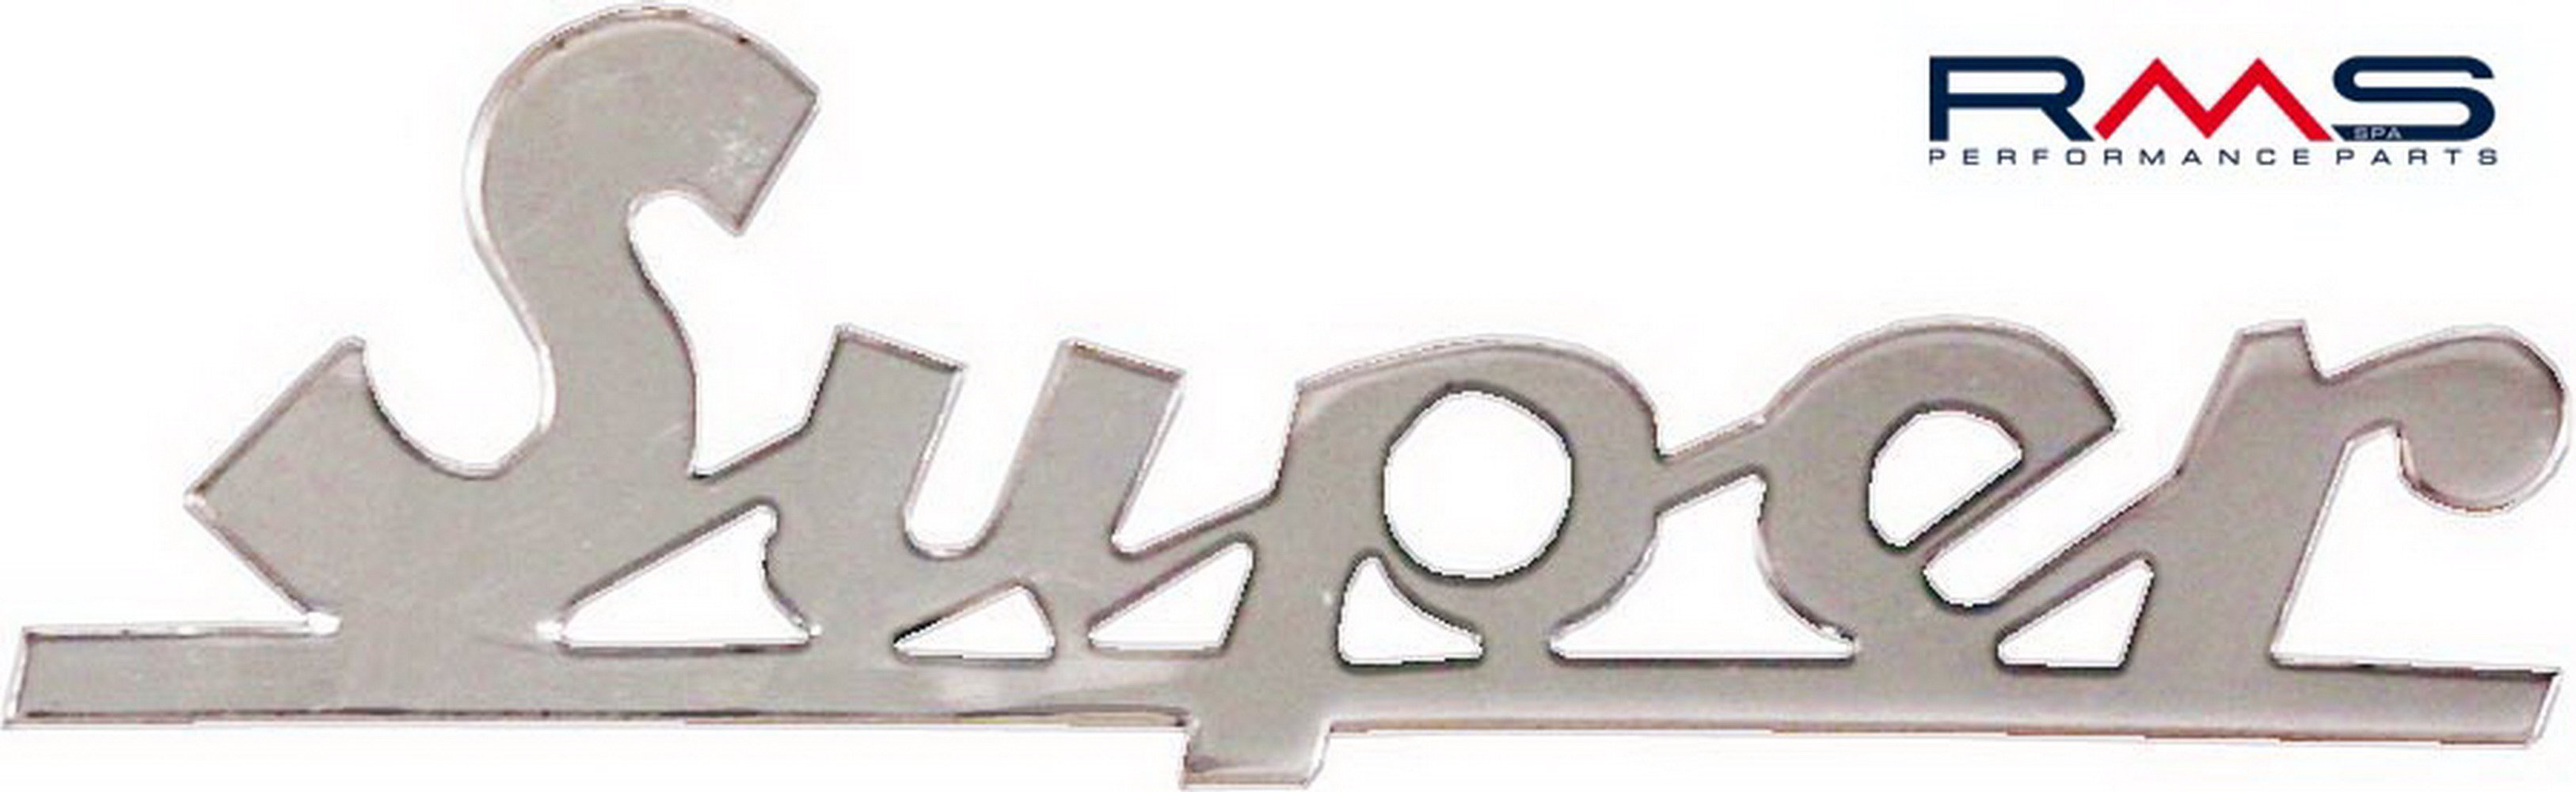 Obrázek produktu Emblém RMS 142720400 na přední štítek 142720400